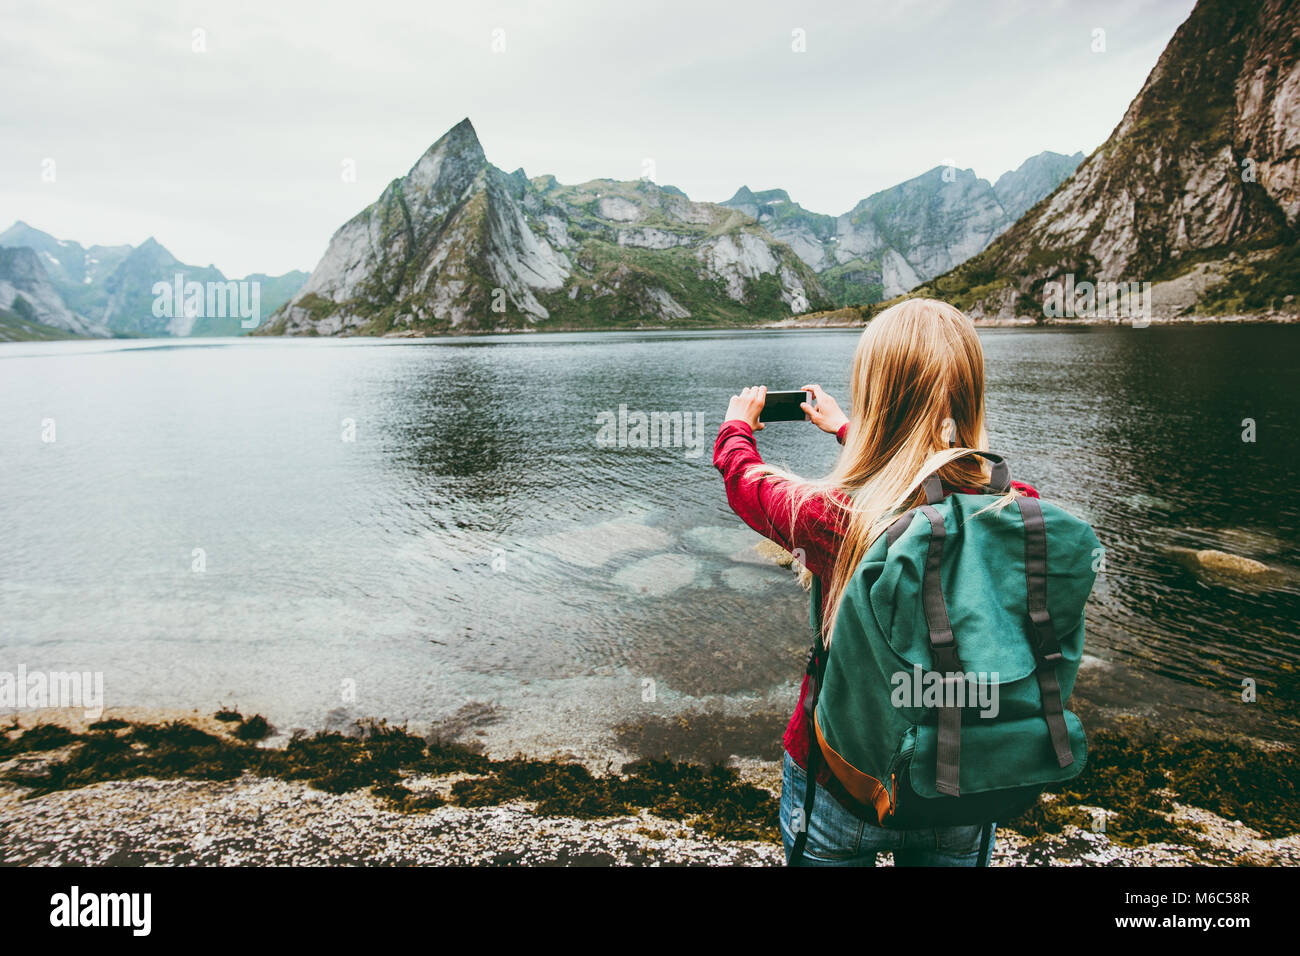 Ragazza turistica prendendo foto tramite smartphone escursioni isole Lofoten Travel lifestyle wanderlust concetto outdoor avventura vacanze estive in Norvegia Foto Stock